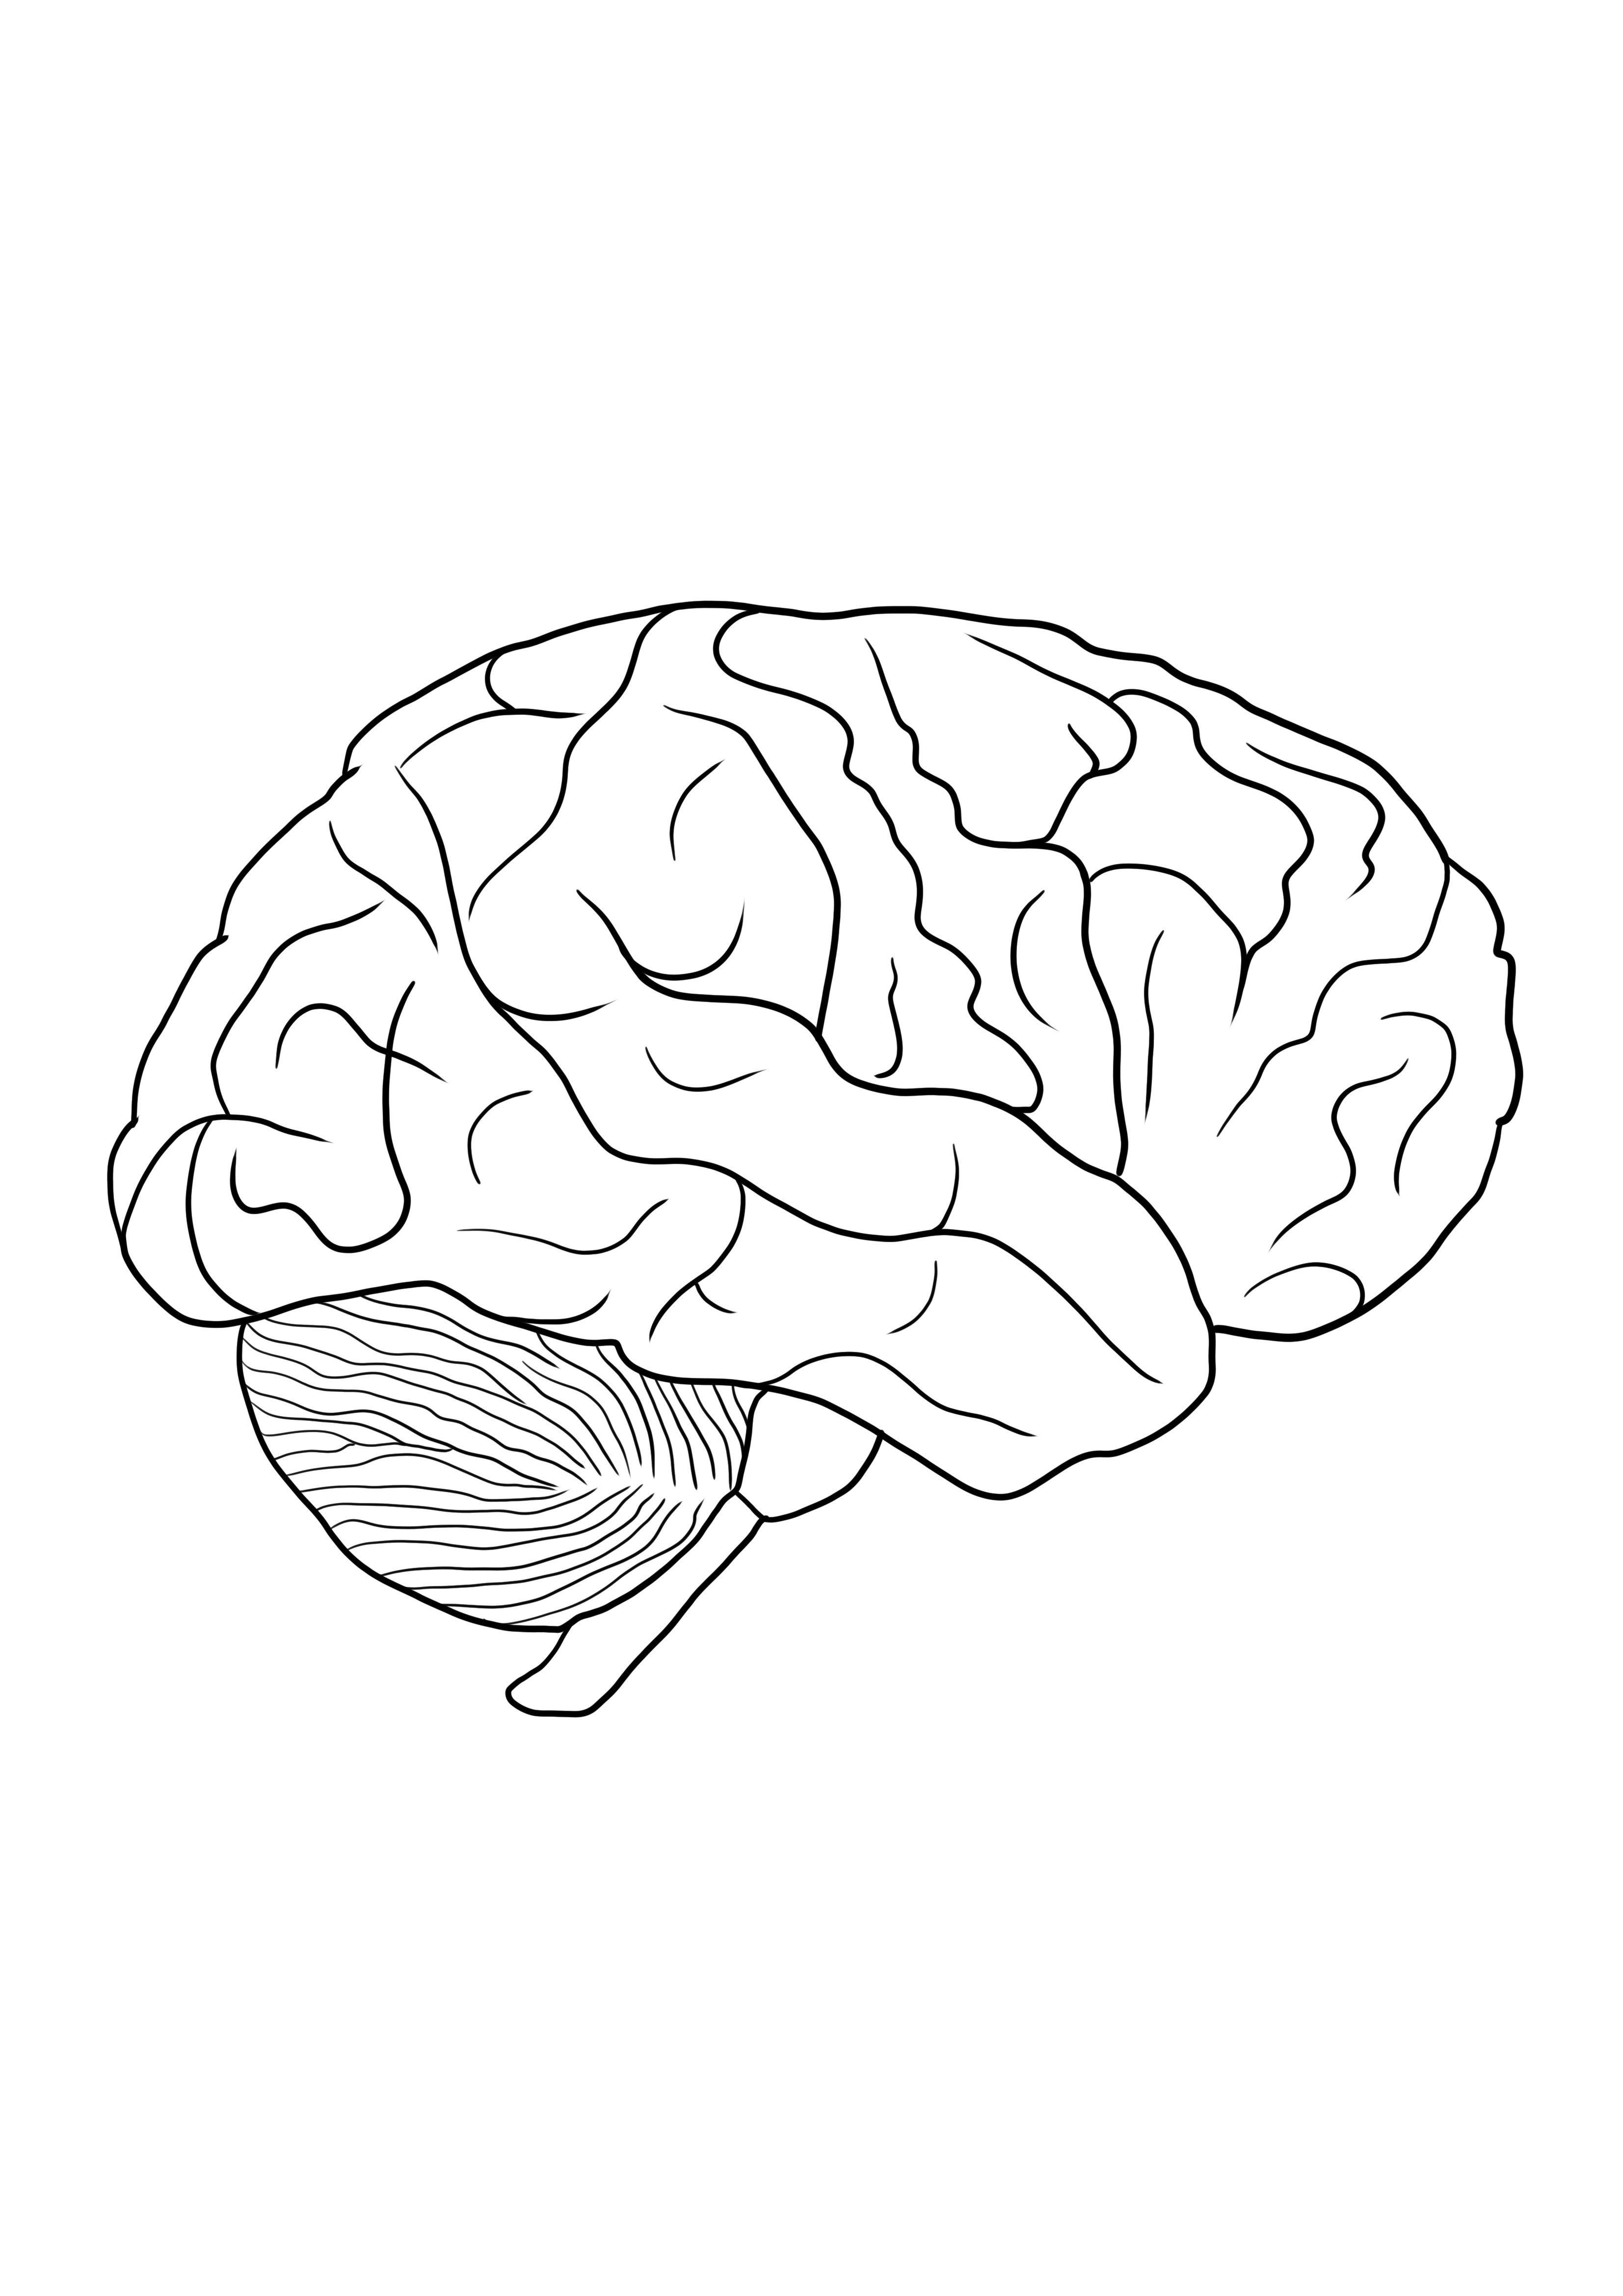 Imagem para colorir do cérebro humano para download gratuito